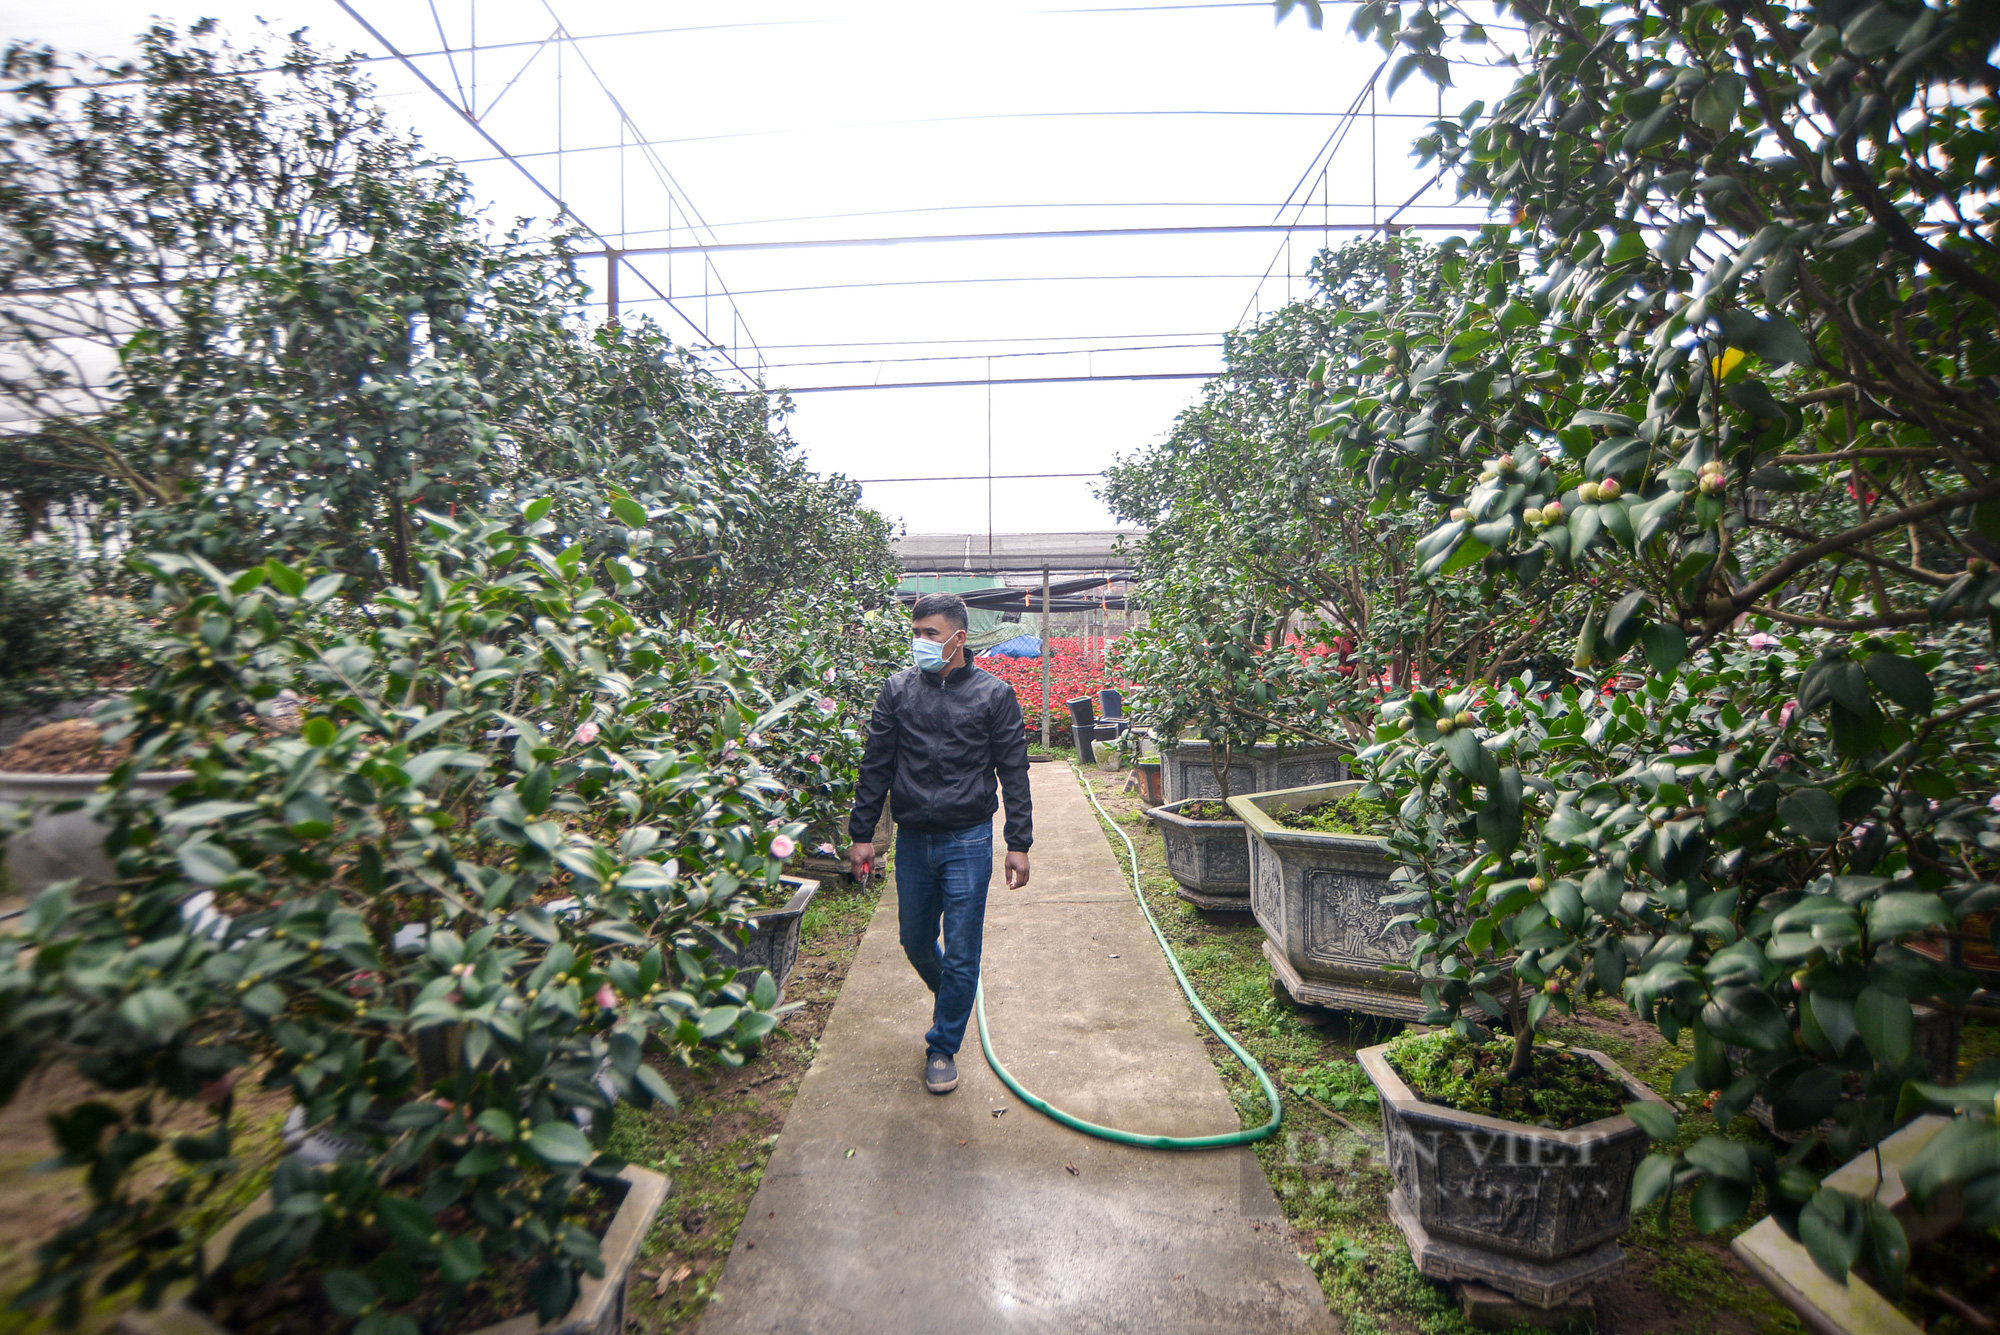 Ghé thăm vườn hoa trà trị giá bạc tỷ tại Hưng Yên - Ảnh 2.